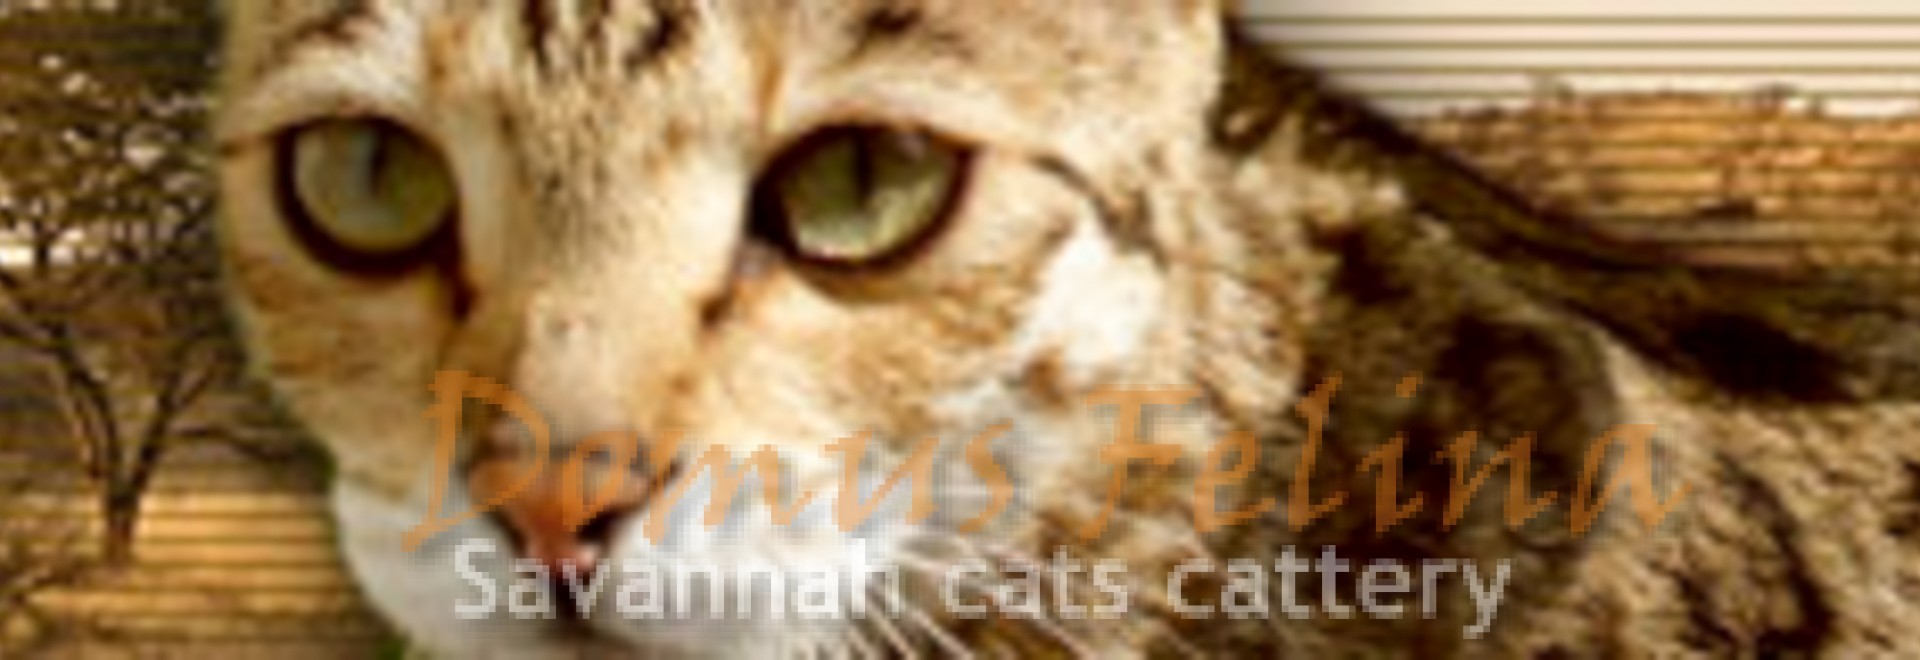 New Savannah SBT (F5) Kitten. Soon!!!